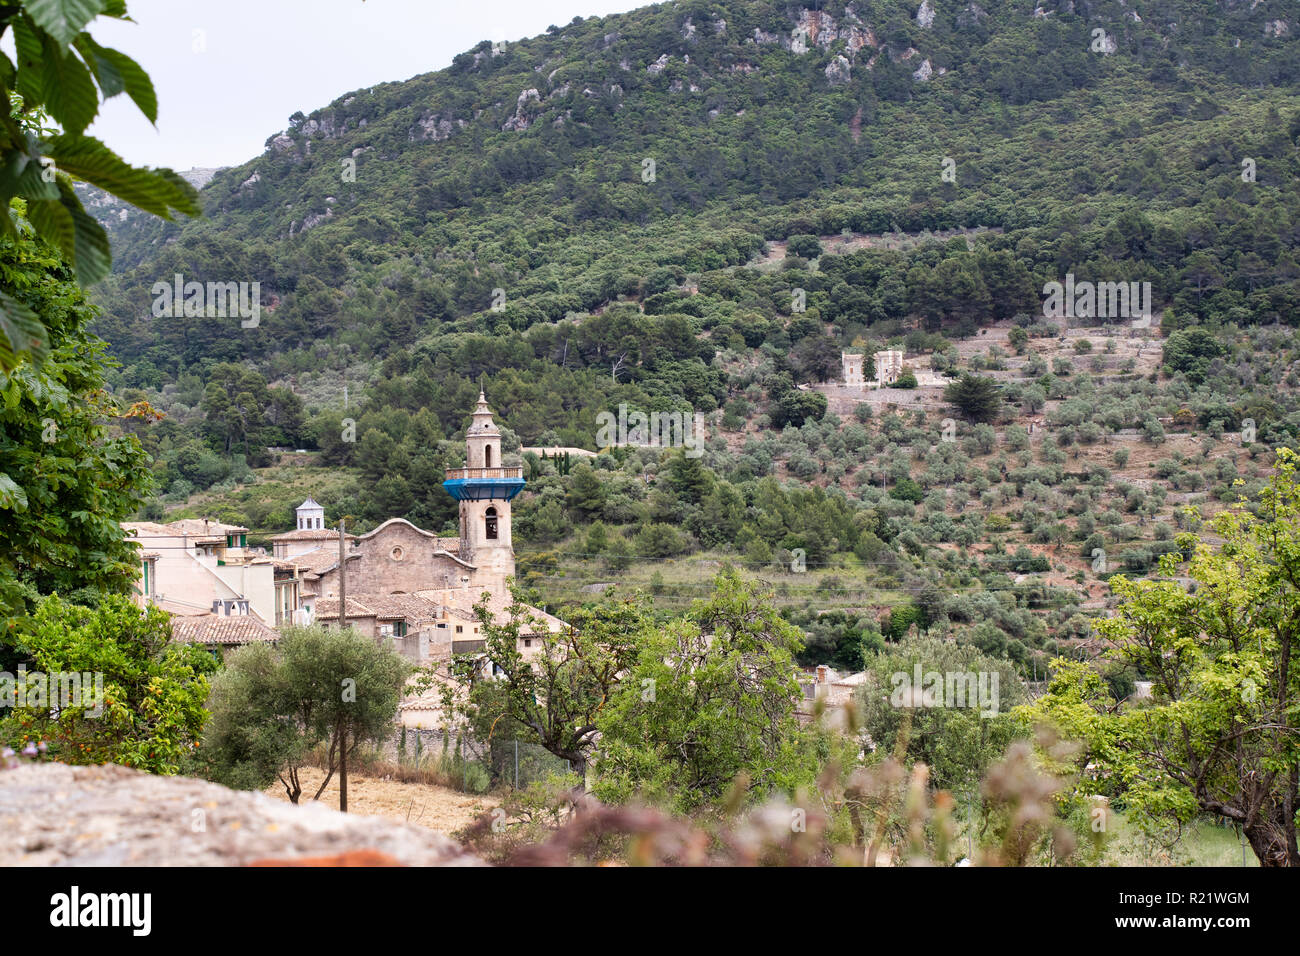 Historical town Valldemossa on the mountain on Majorca Stock Photo